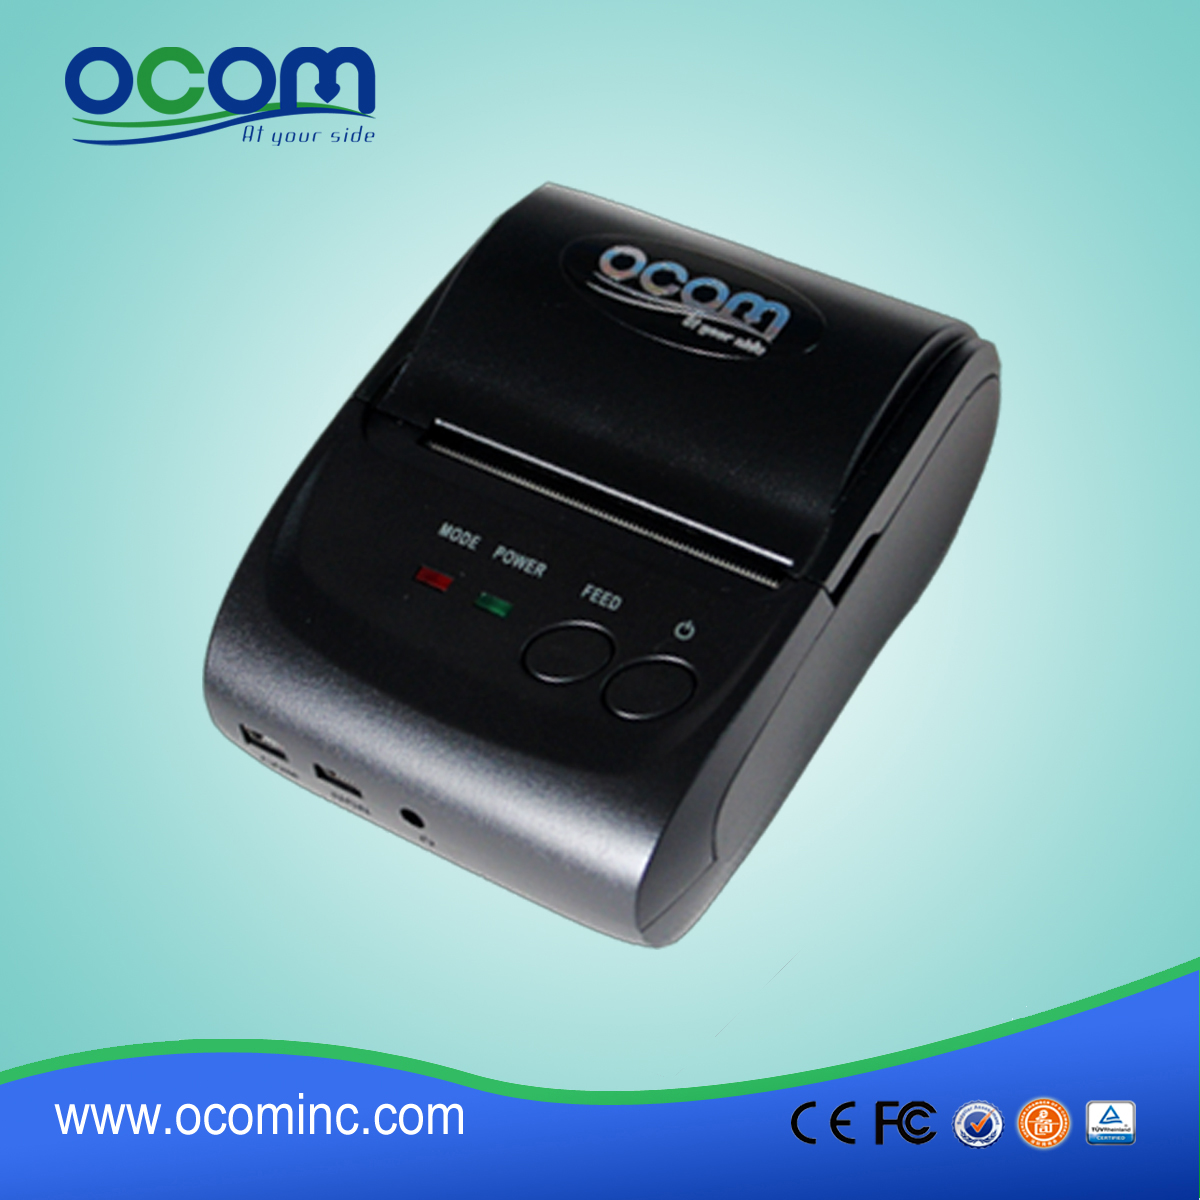 2 pouces OEM Disponible Android iOS charge thermique Mini imprimante portable en Chine OCPP-M05